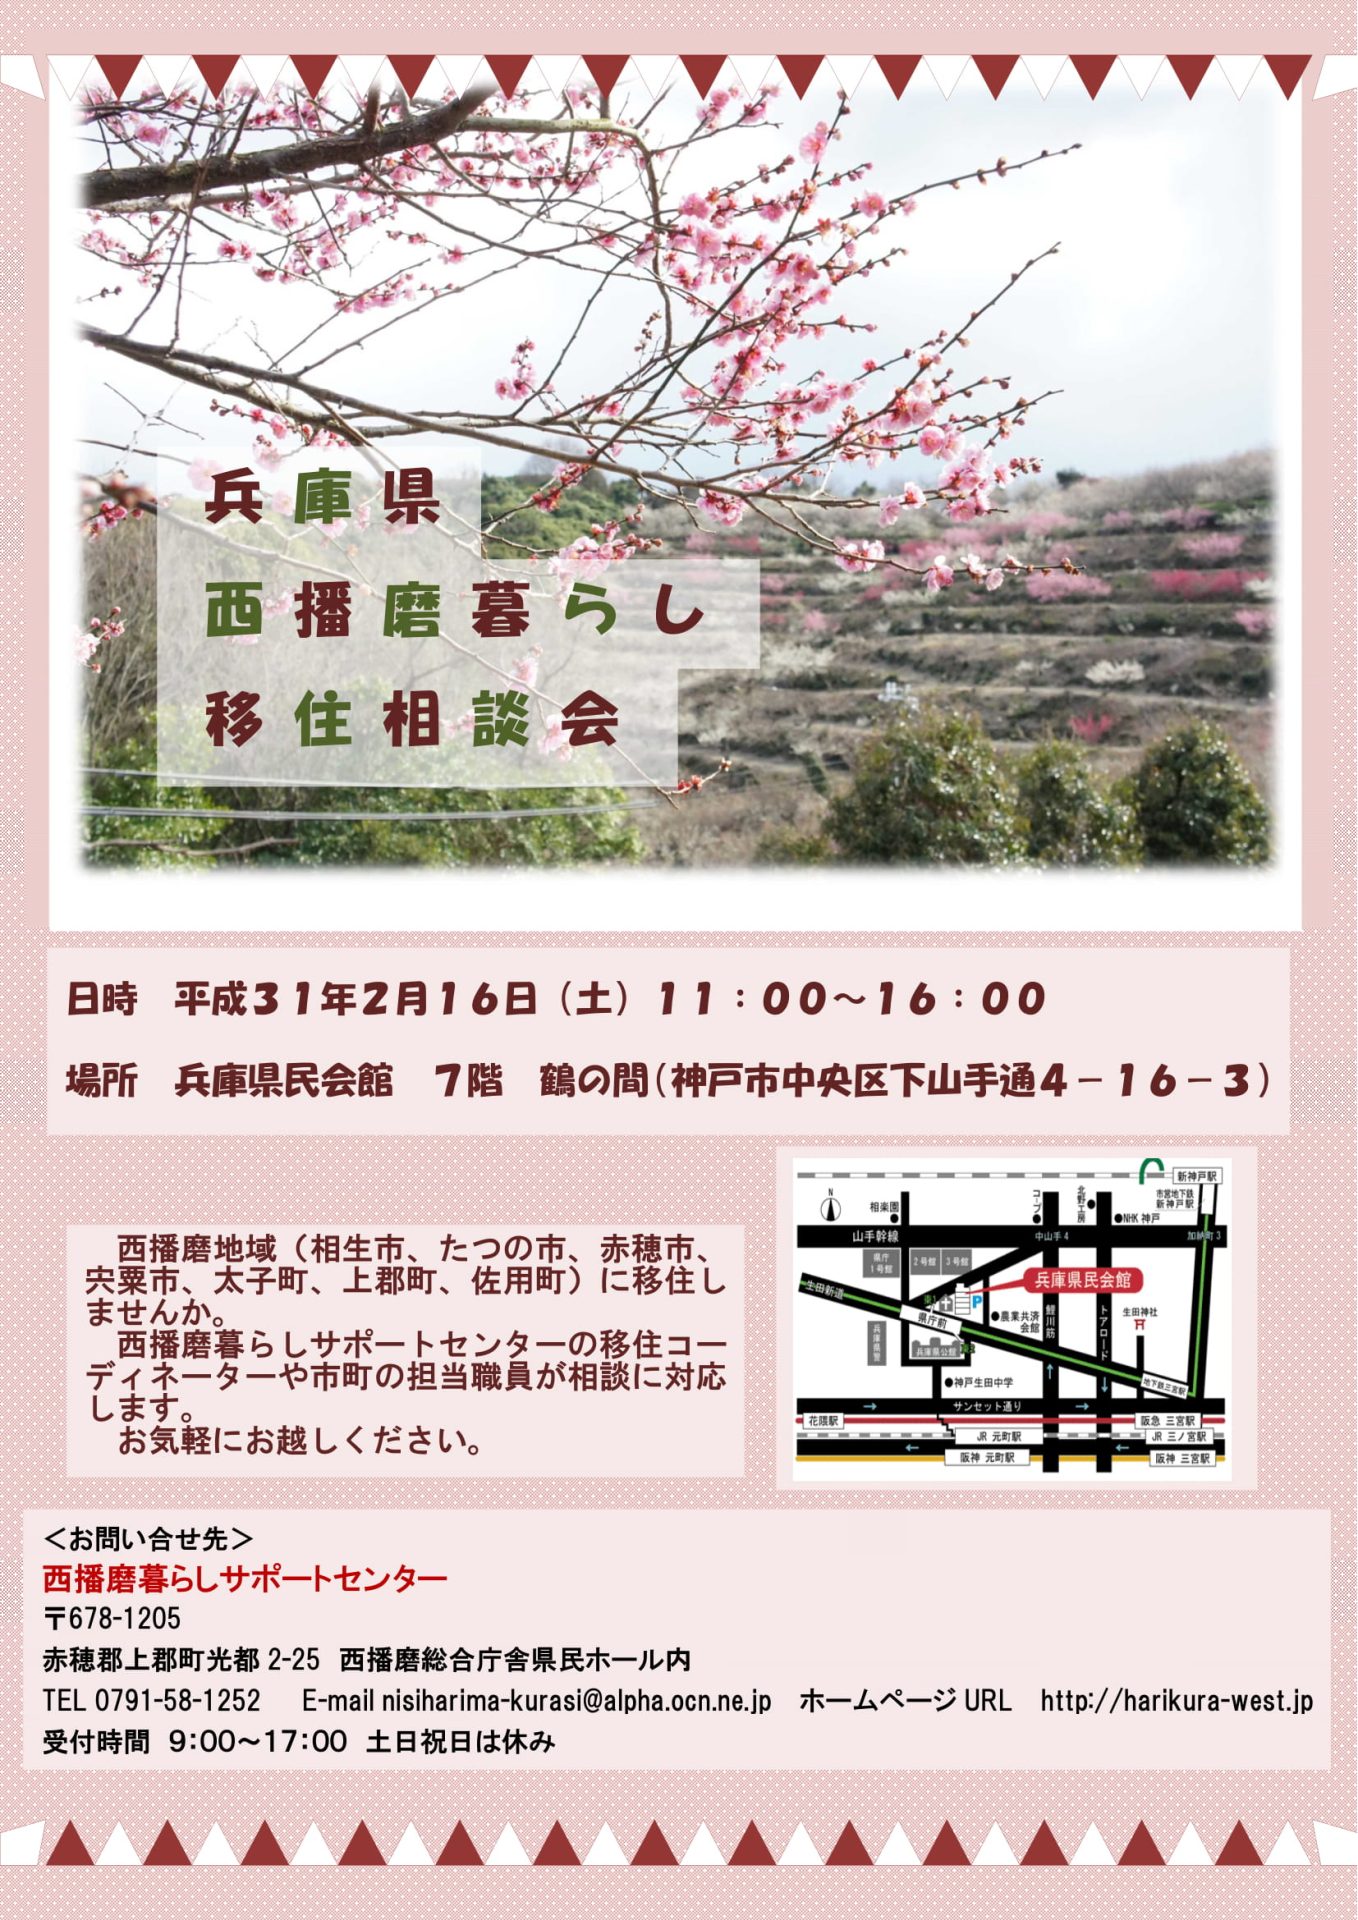 兵庫県西播磨暮らし移住相談会 | 移住関連イベント情報